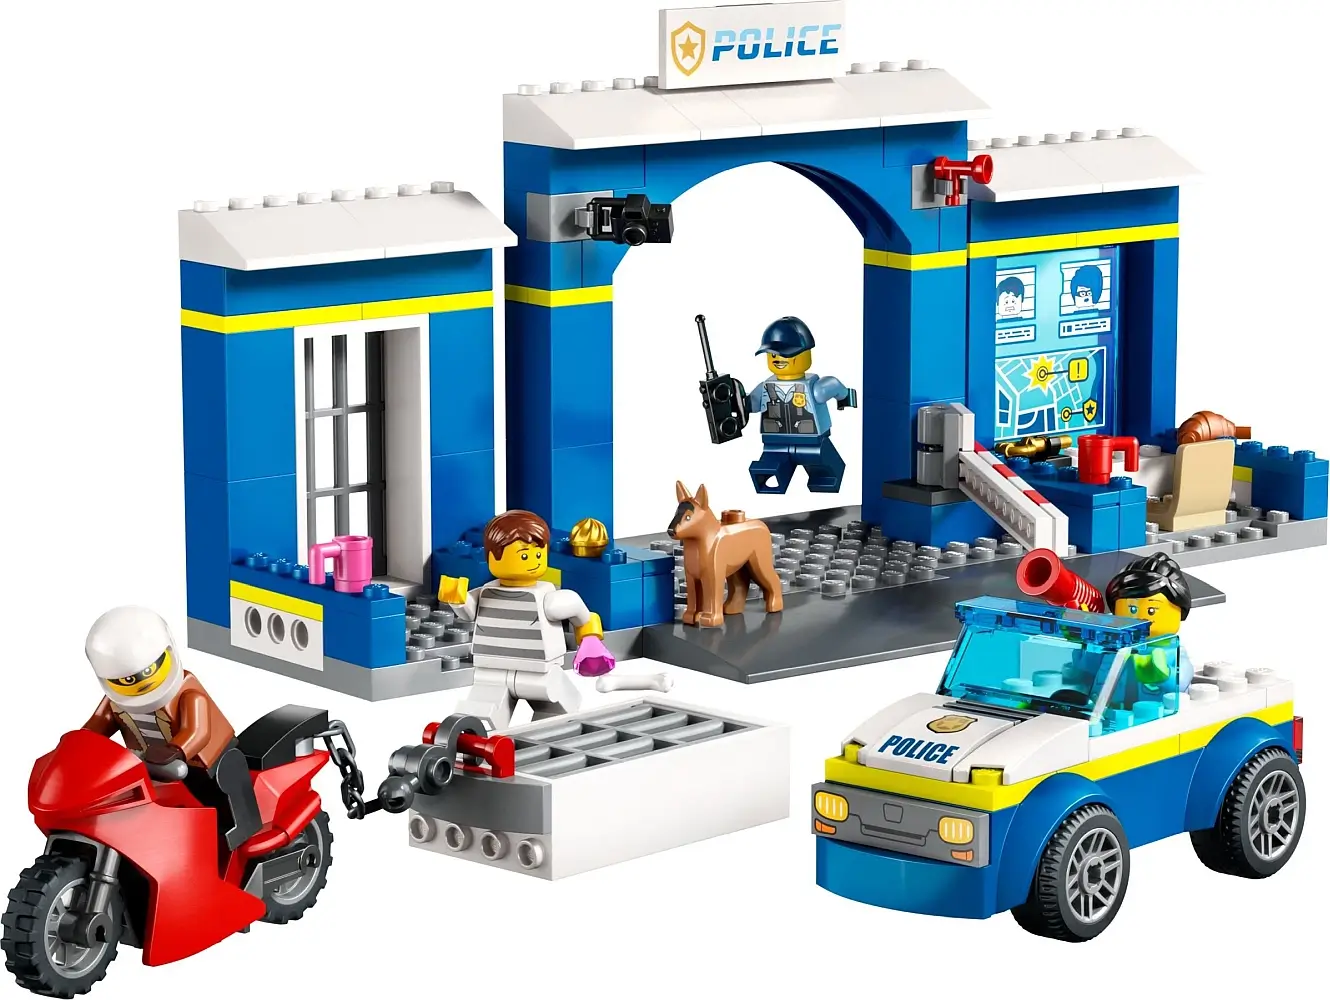 Pościg przy policyjnym posterunku z serii LEGO® City